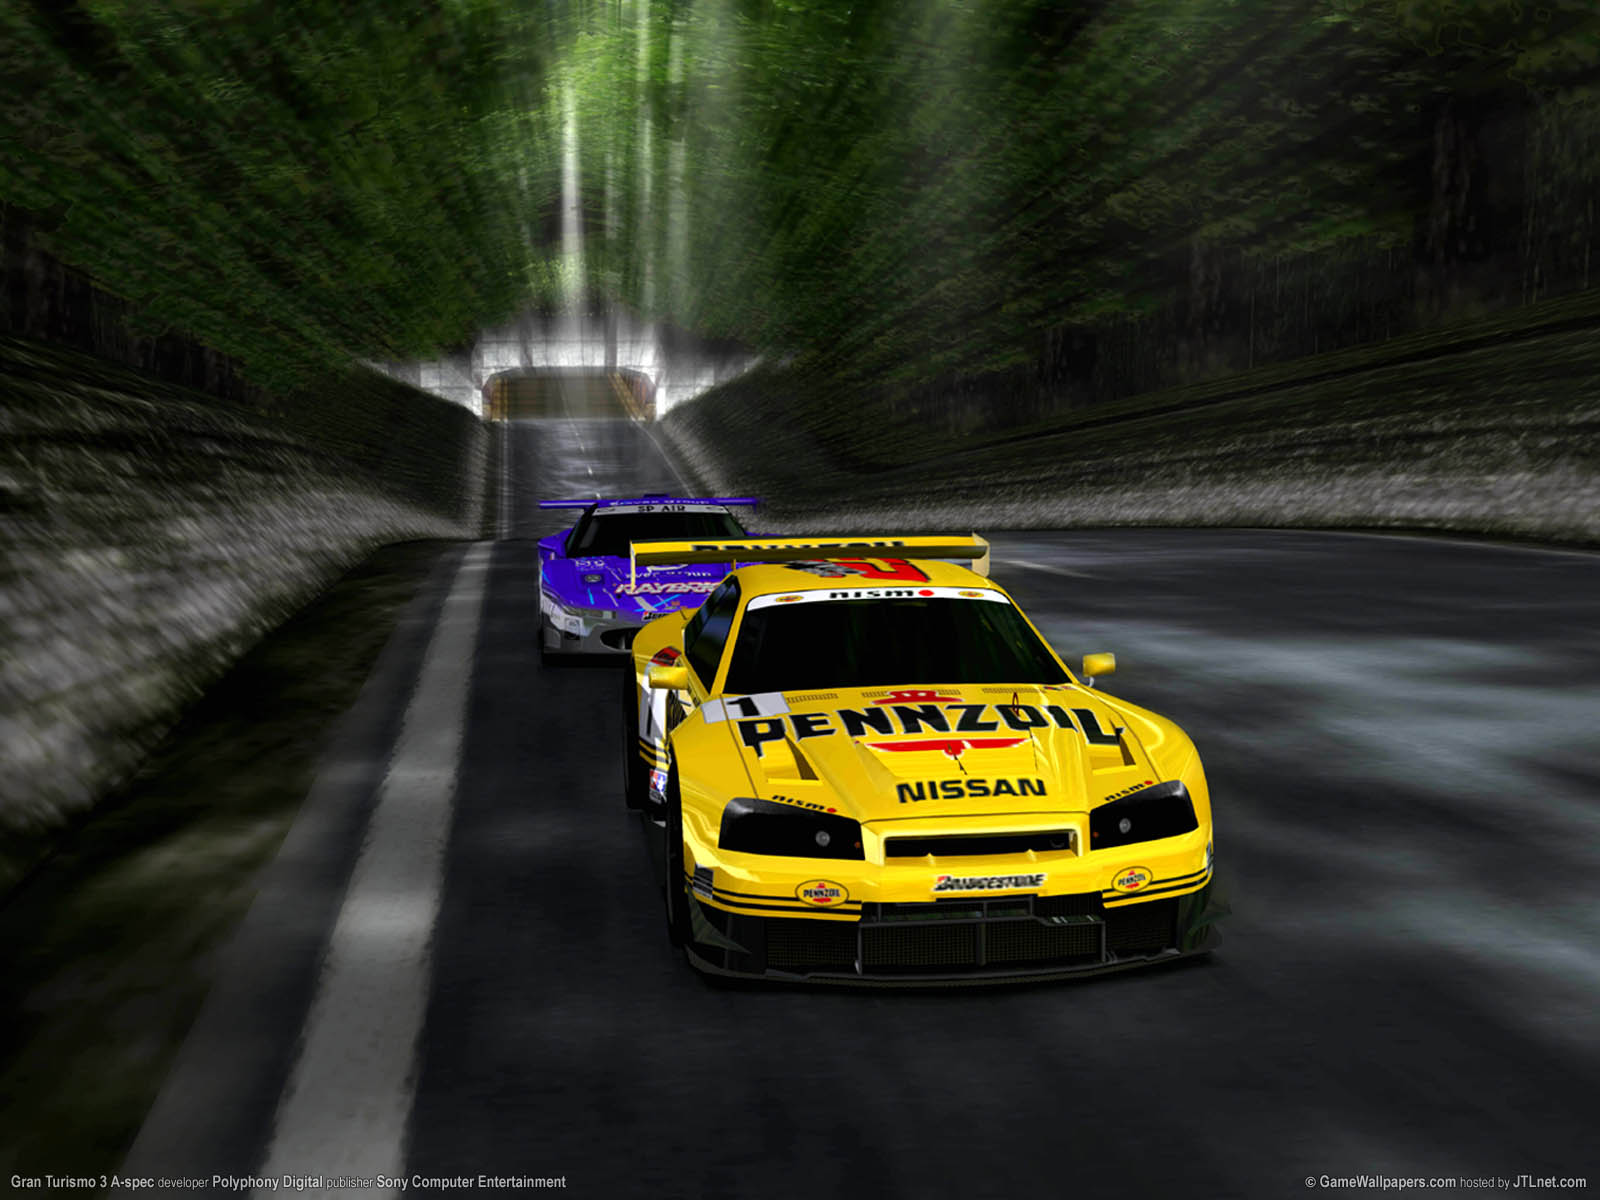 Gran Turismo 3 A-spec fond d'cran 07 1600x1200